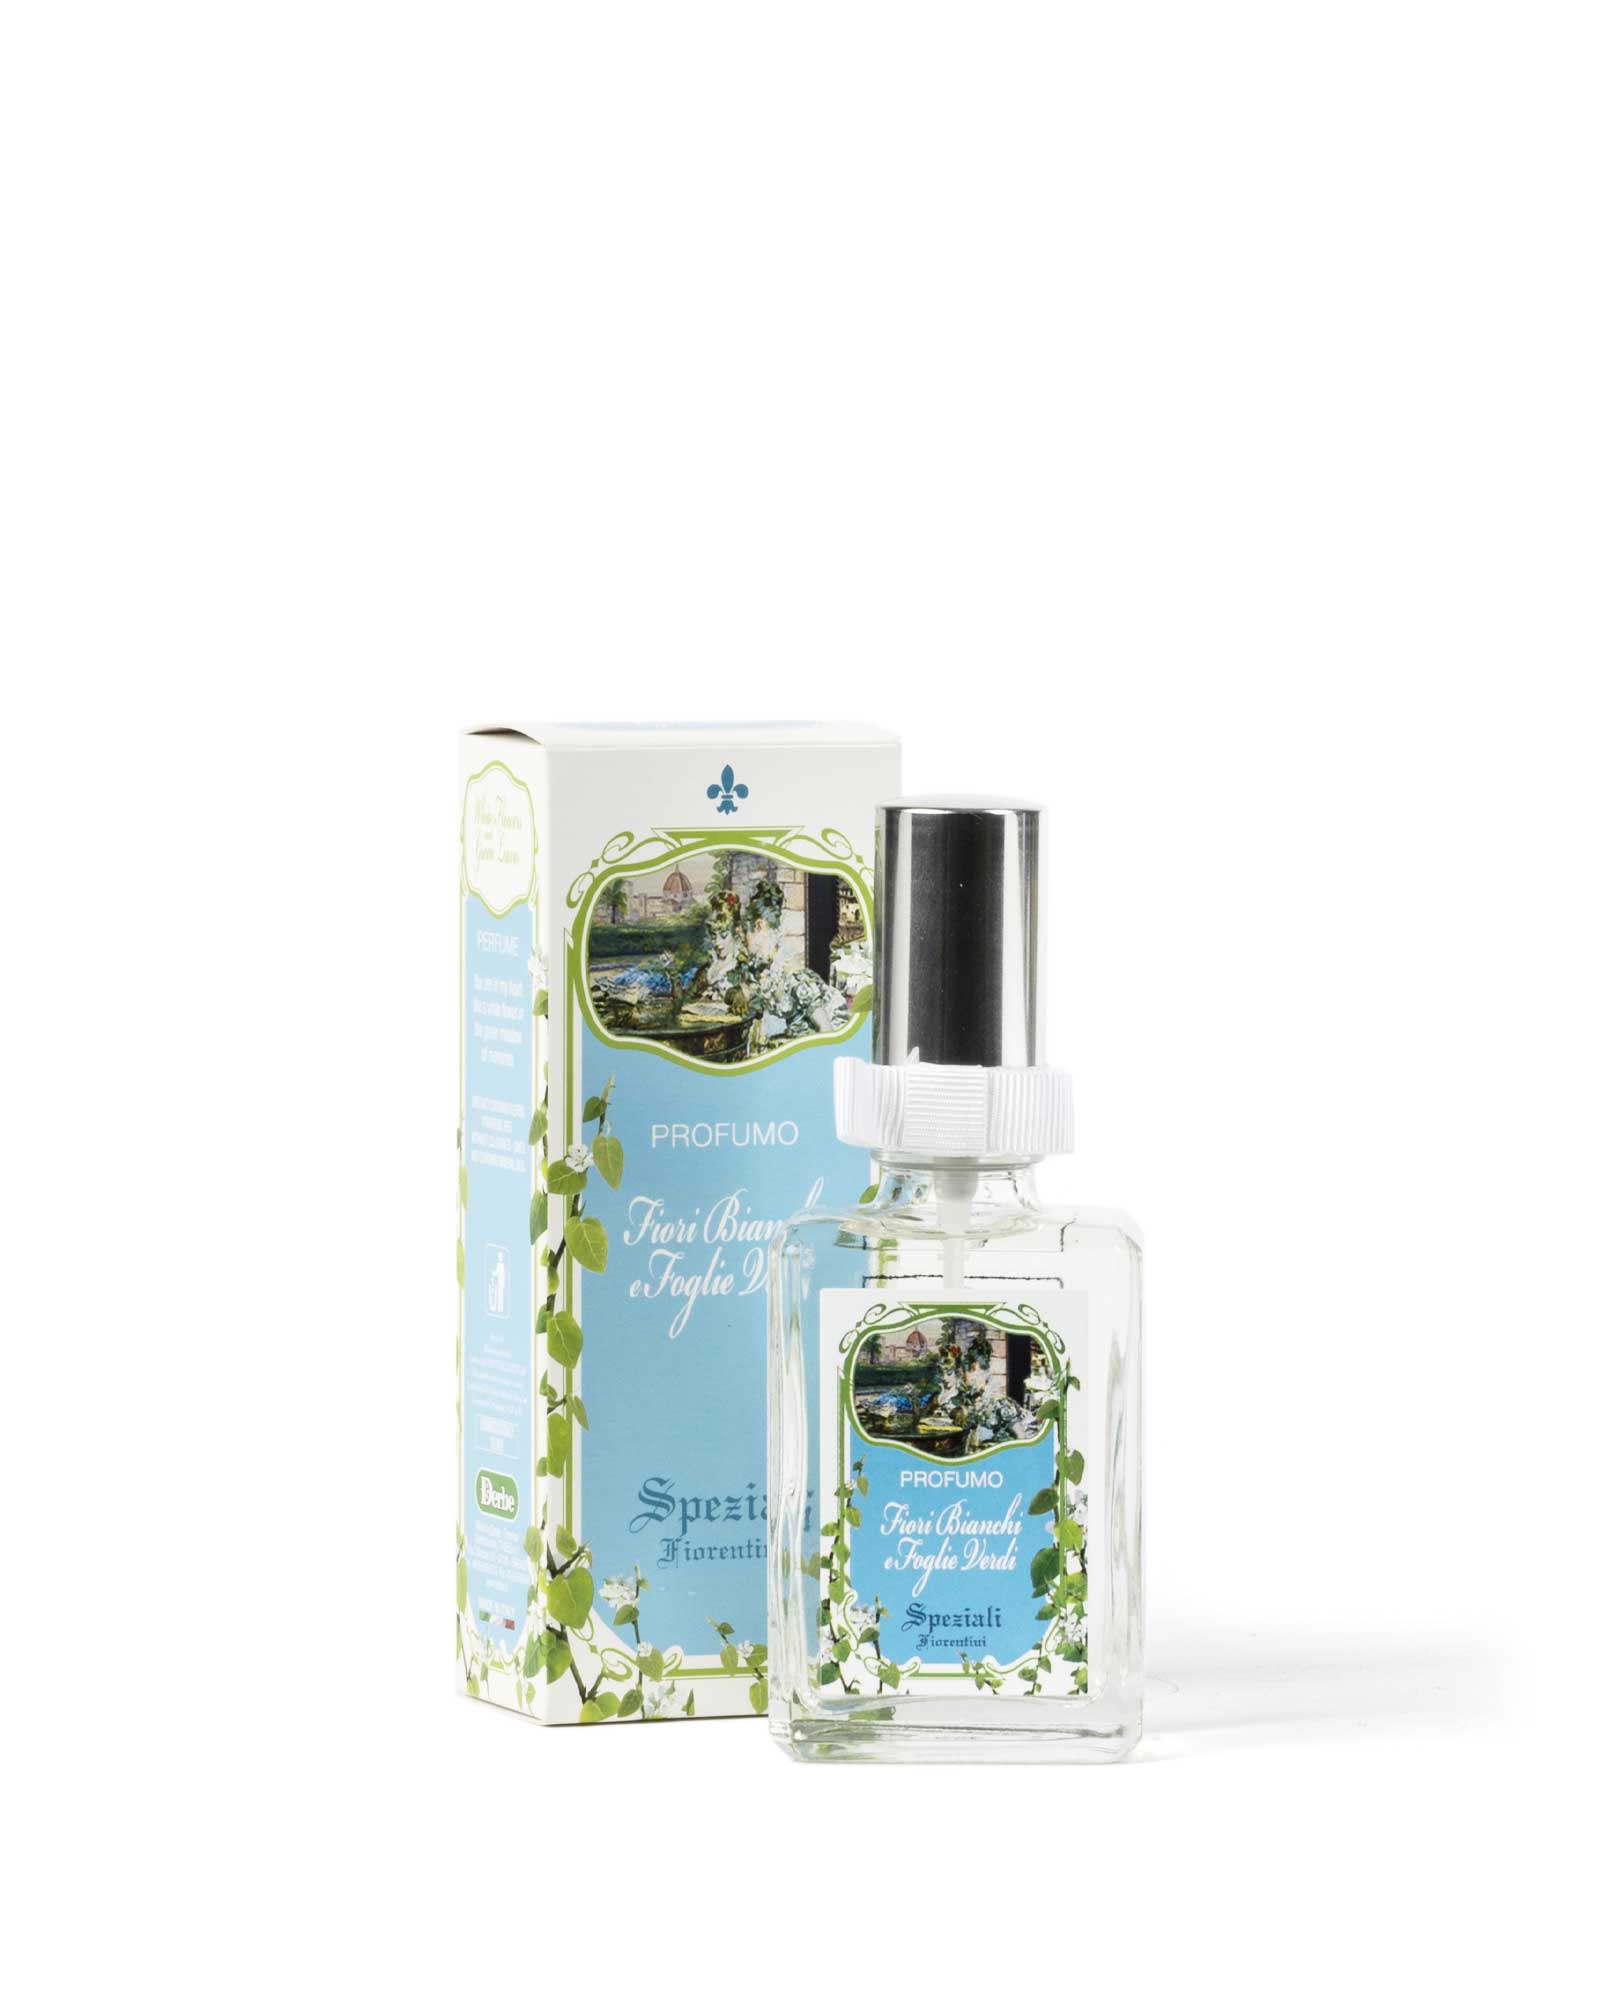 Parfüm Efeu und Weißdorn – Speziali Fiorentini – Derbe